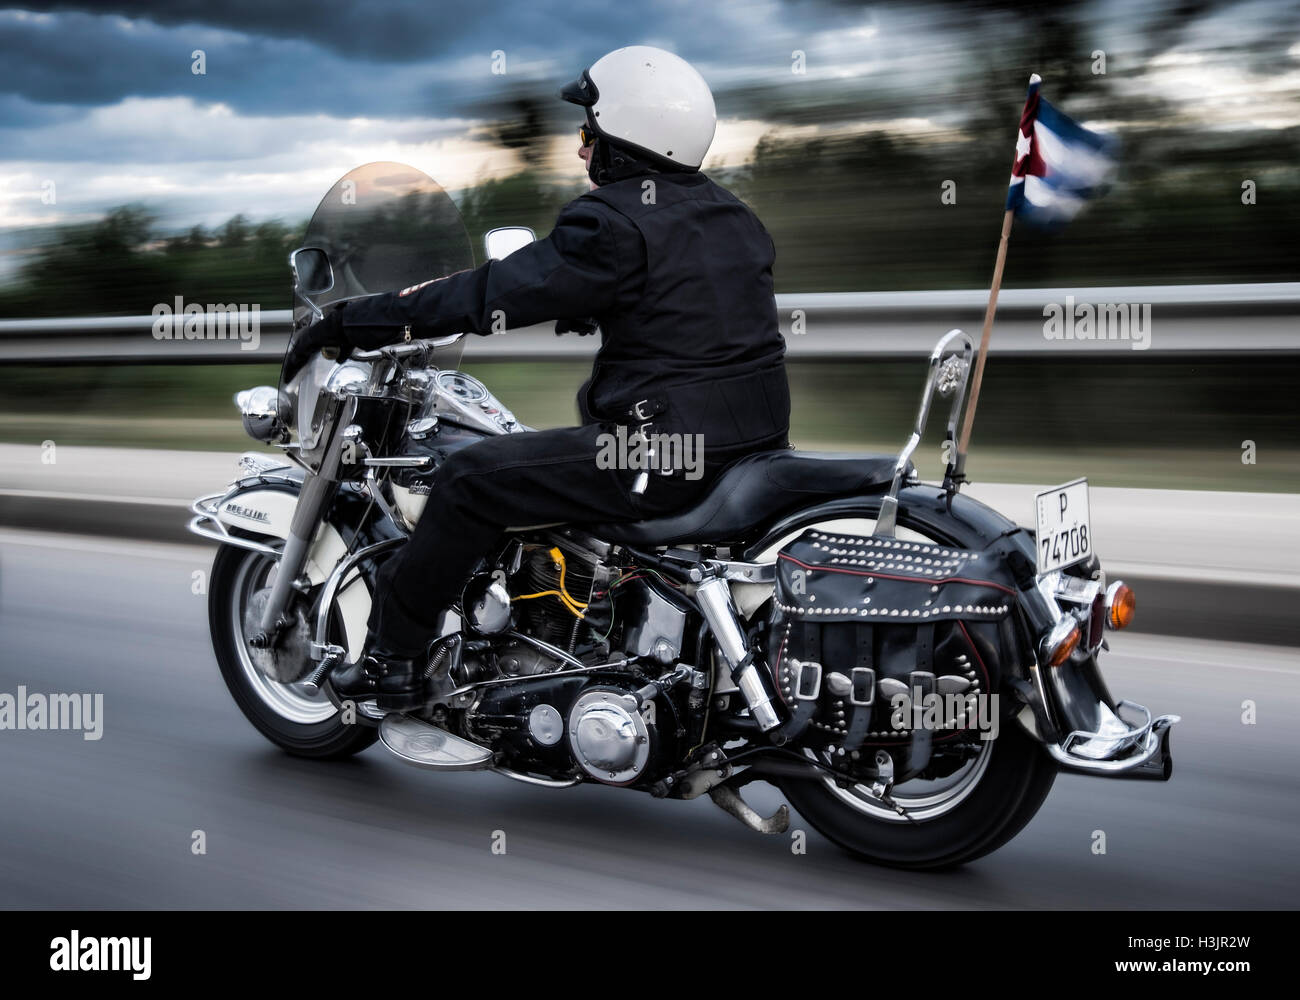 Man Riding une moto Harley Davidson à la vitesse, avec Fanion cubain, Cuba Banque D'Images